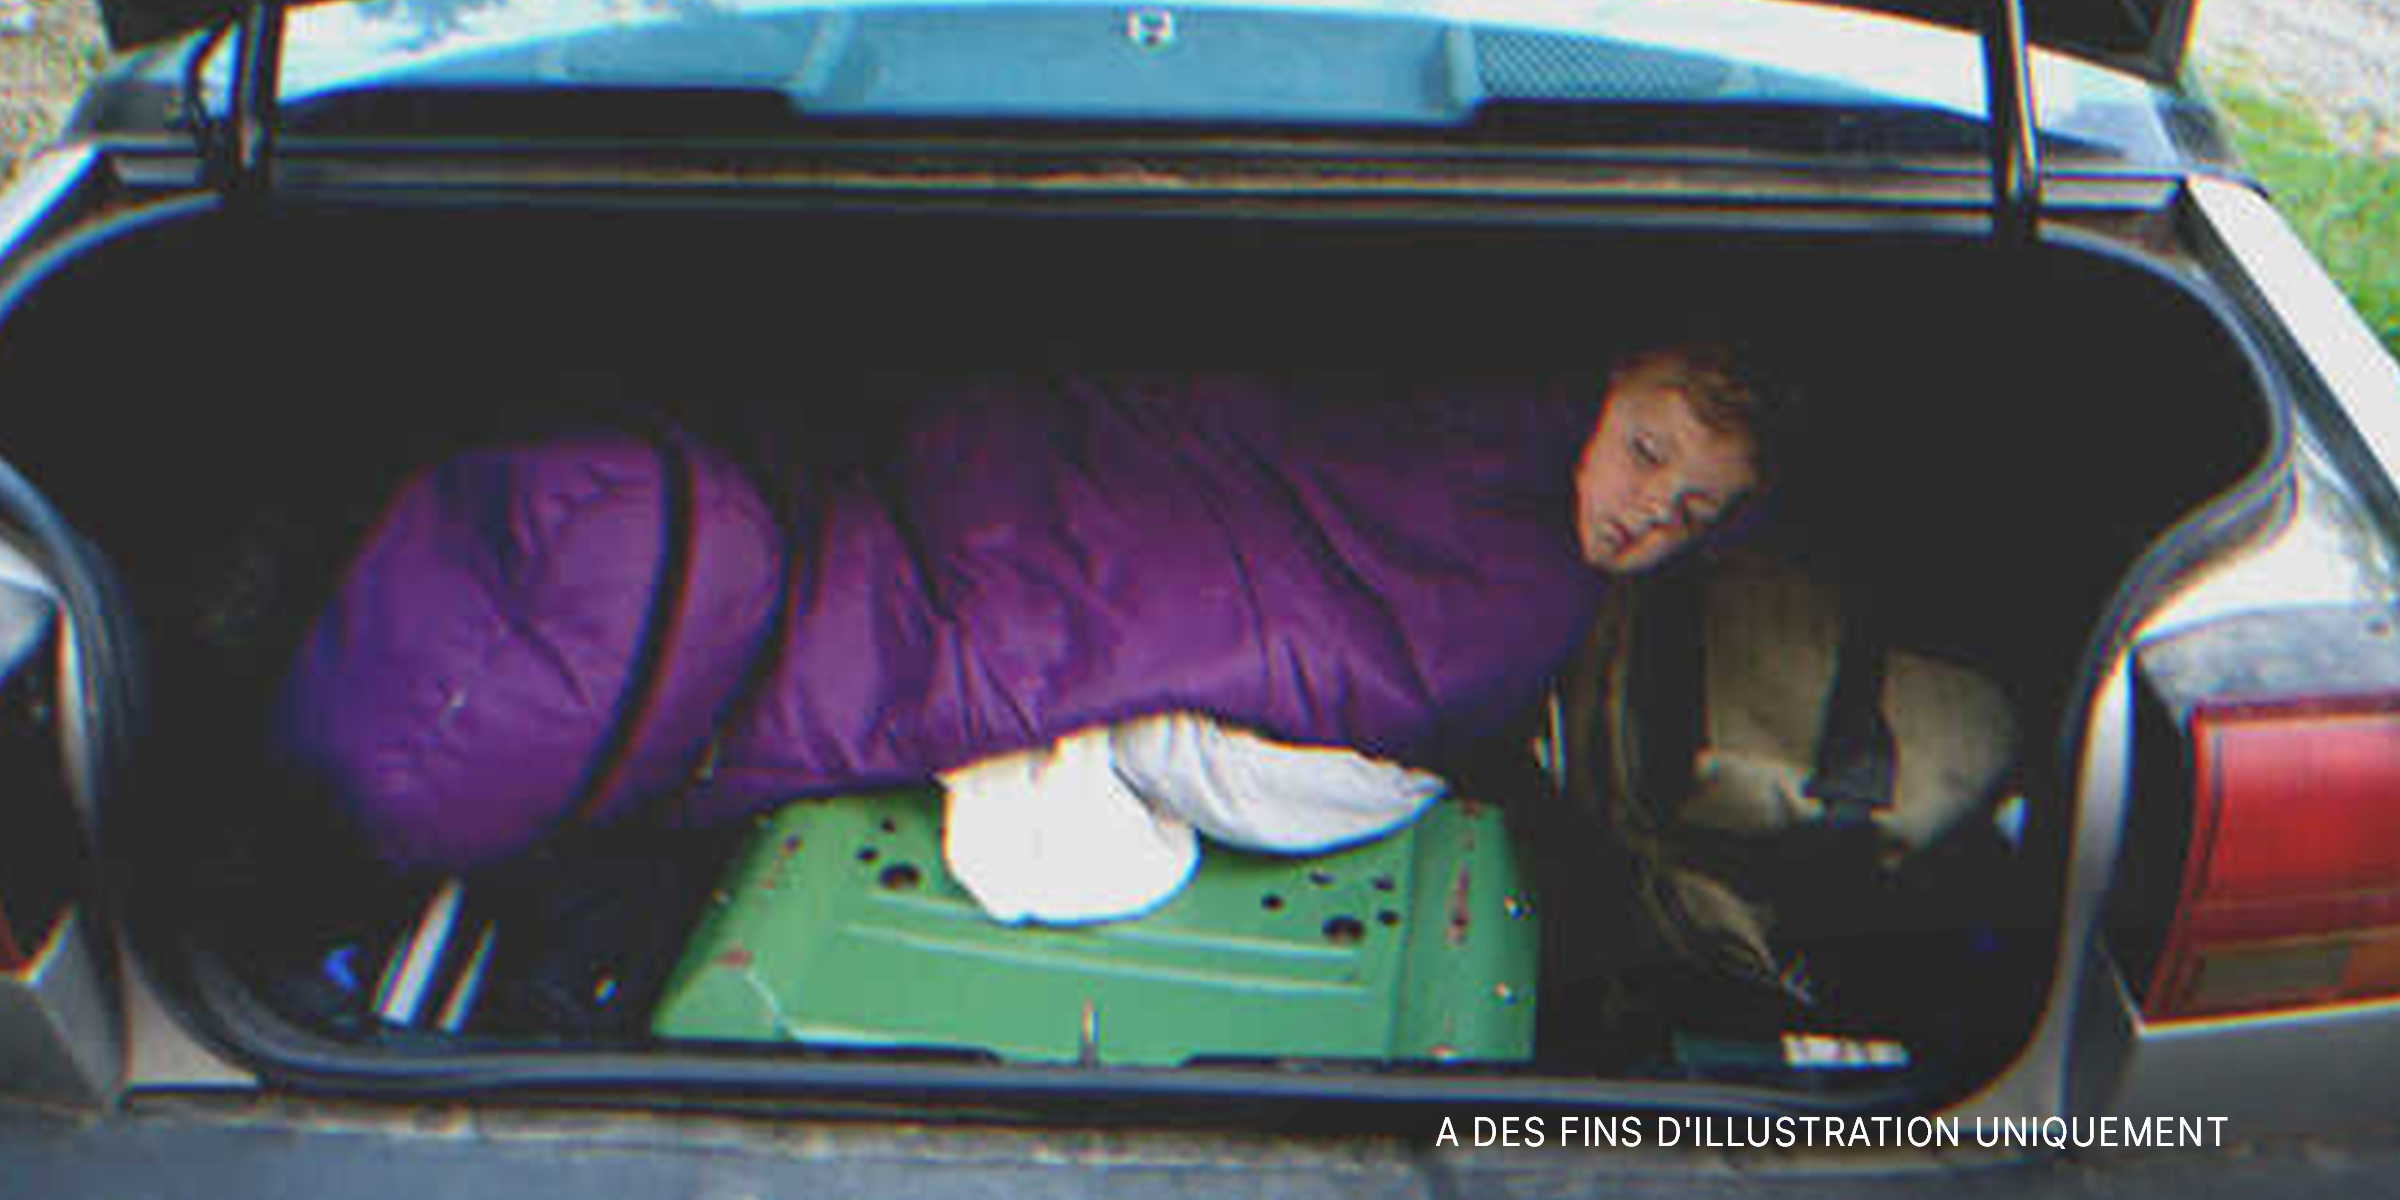 Un enfant cachant dans le coffre d'une voiture | Source : Shutterstock.com